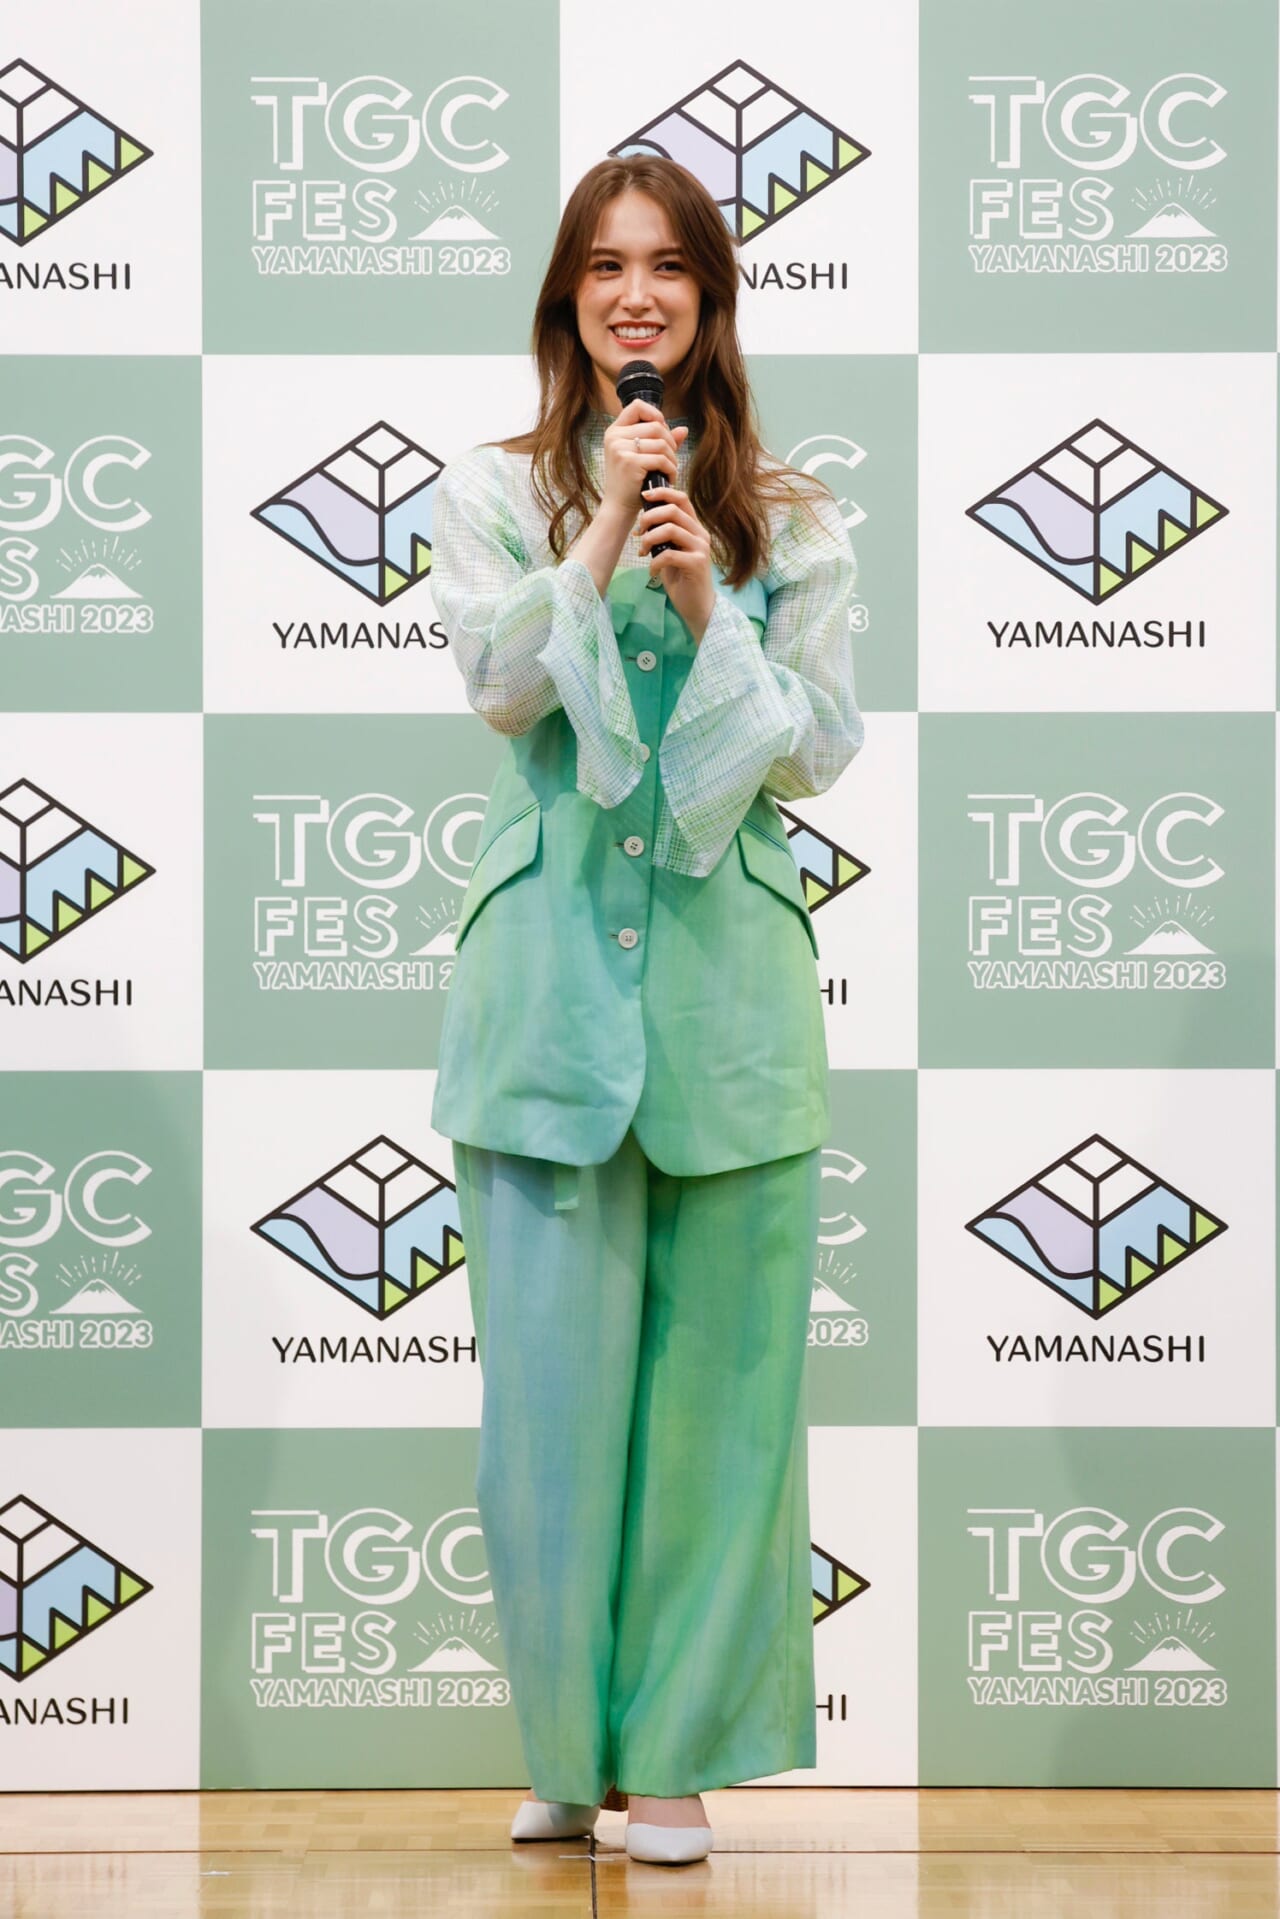 ©TGC FES YAMANASHI 2023 Press Conference